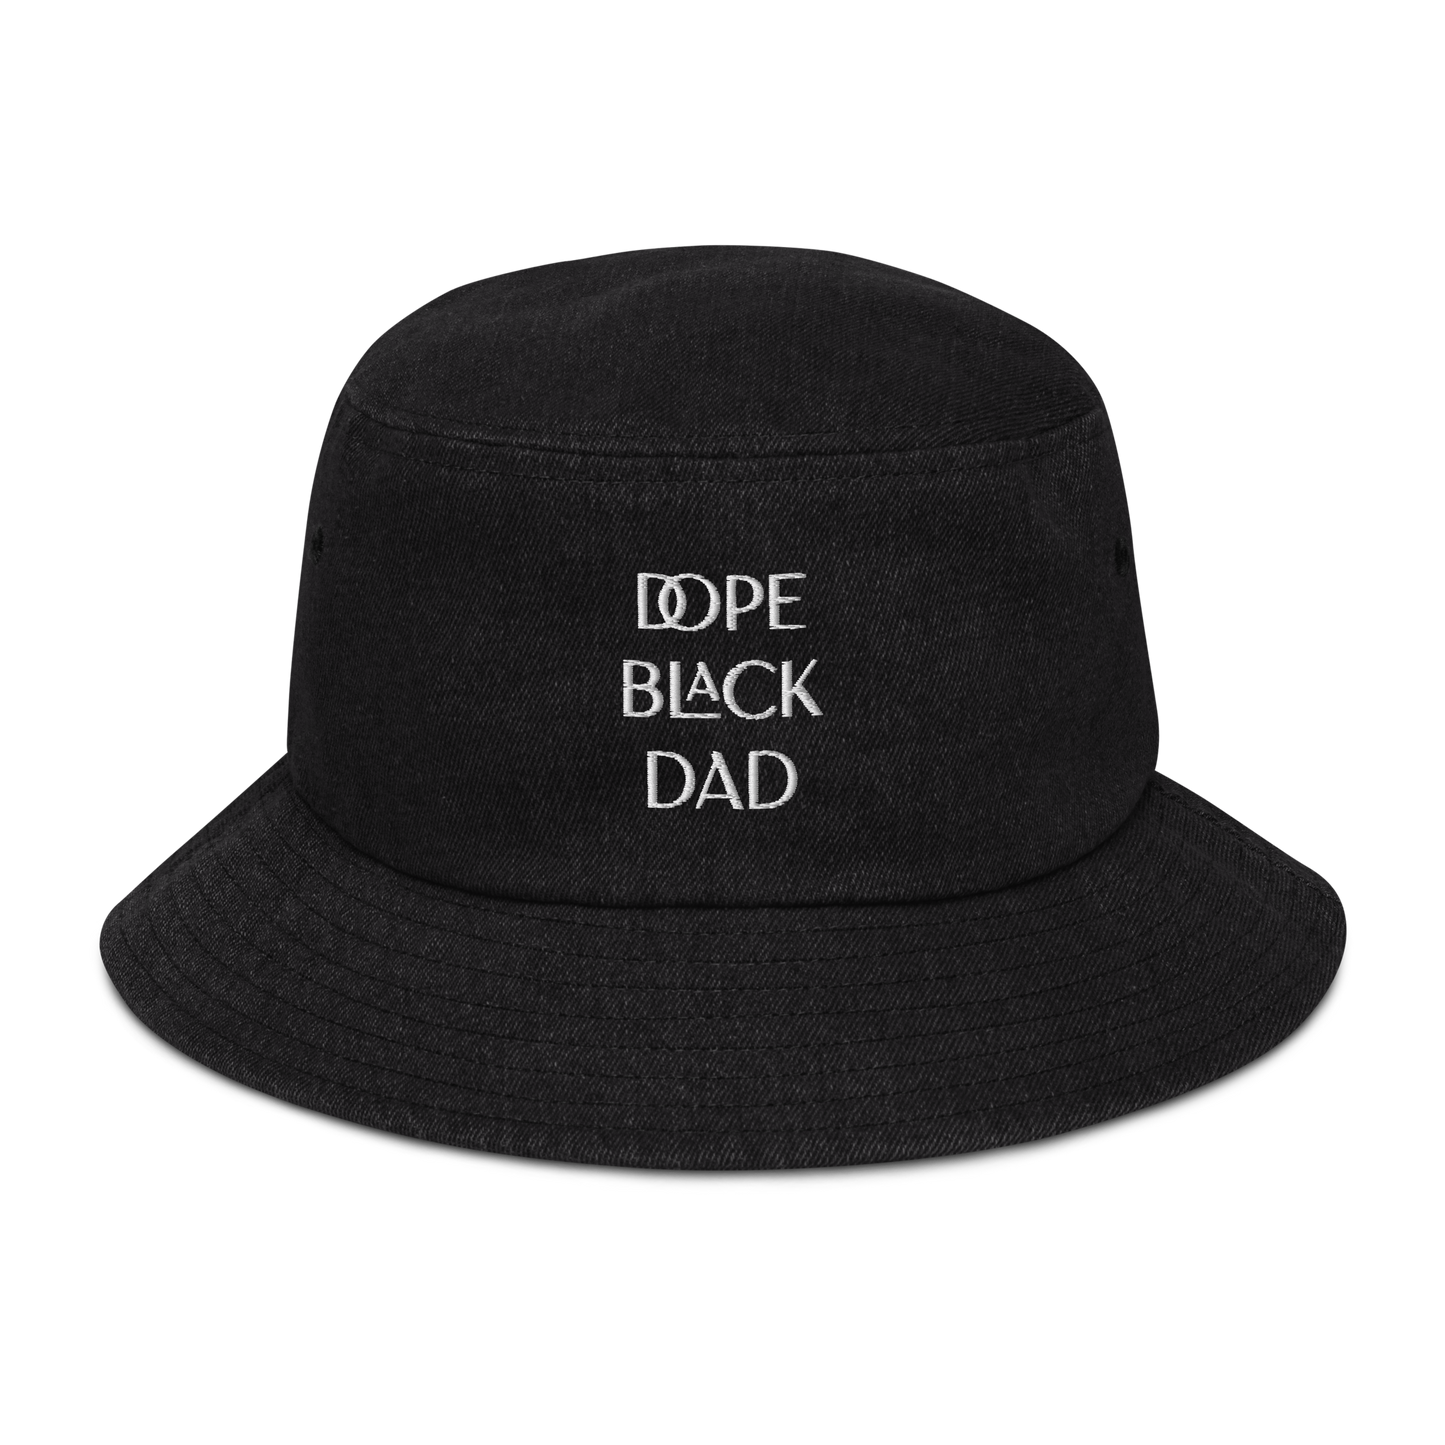 Dope Black Dad Denim Bucket Hat